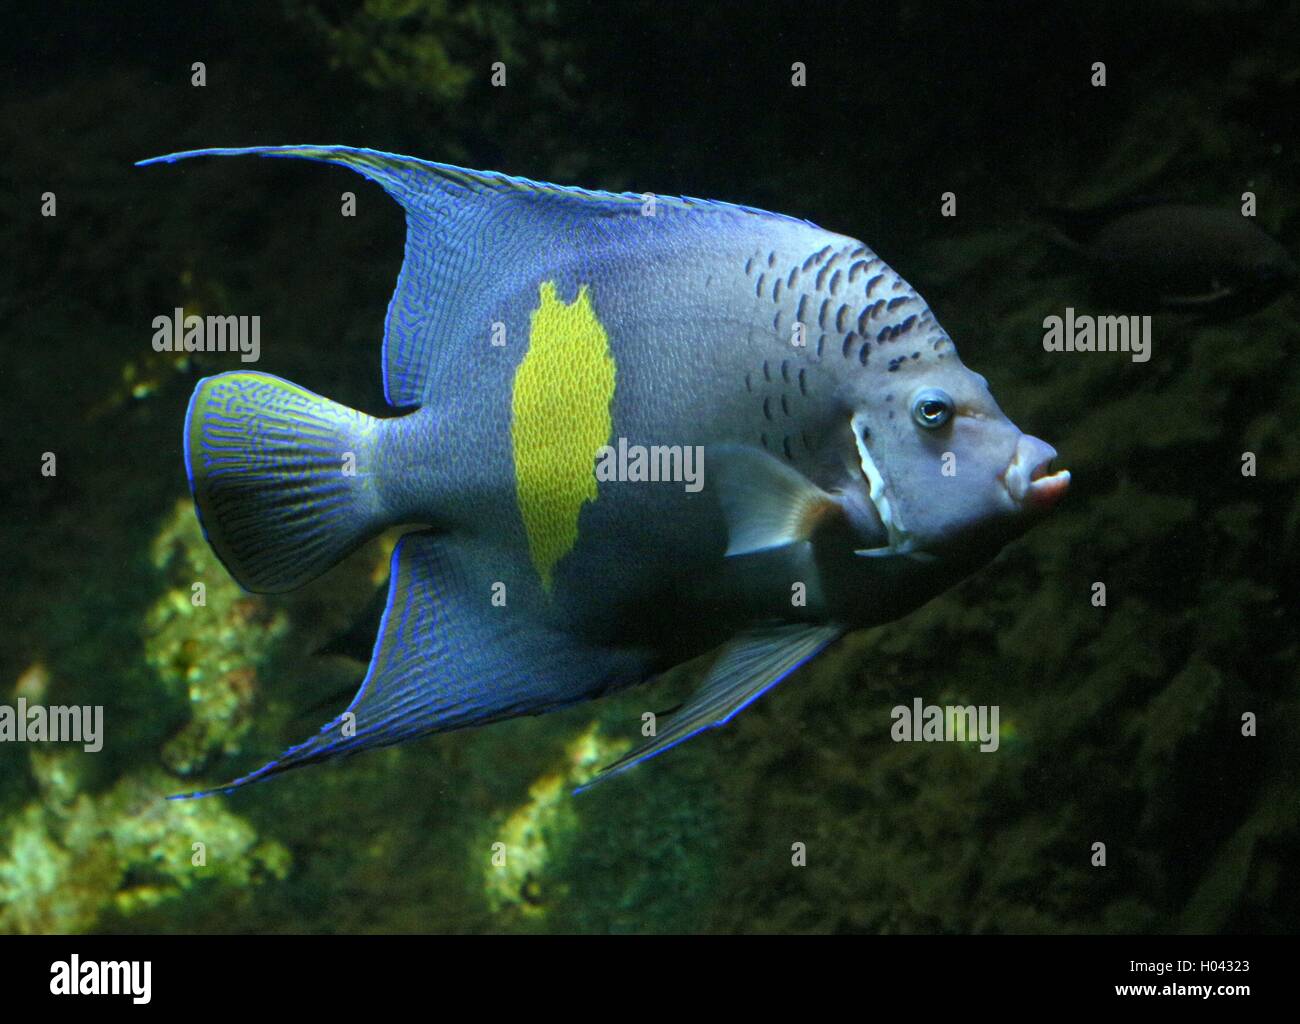 Angelfish Pomacanthus maculosus (demi-lune), également Yellowband poissons-anges, originaire de la région du golfe Persique et de l'Océan Indien Banque D'Images